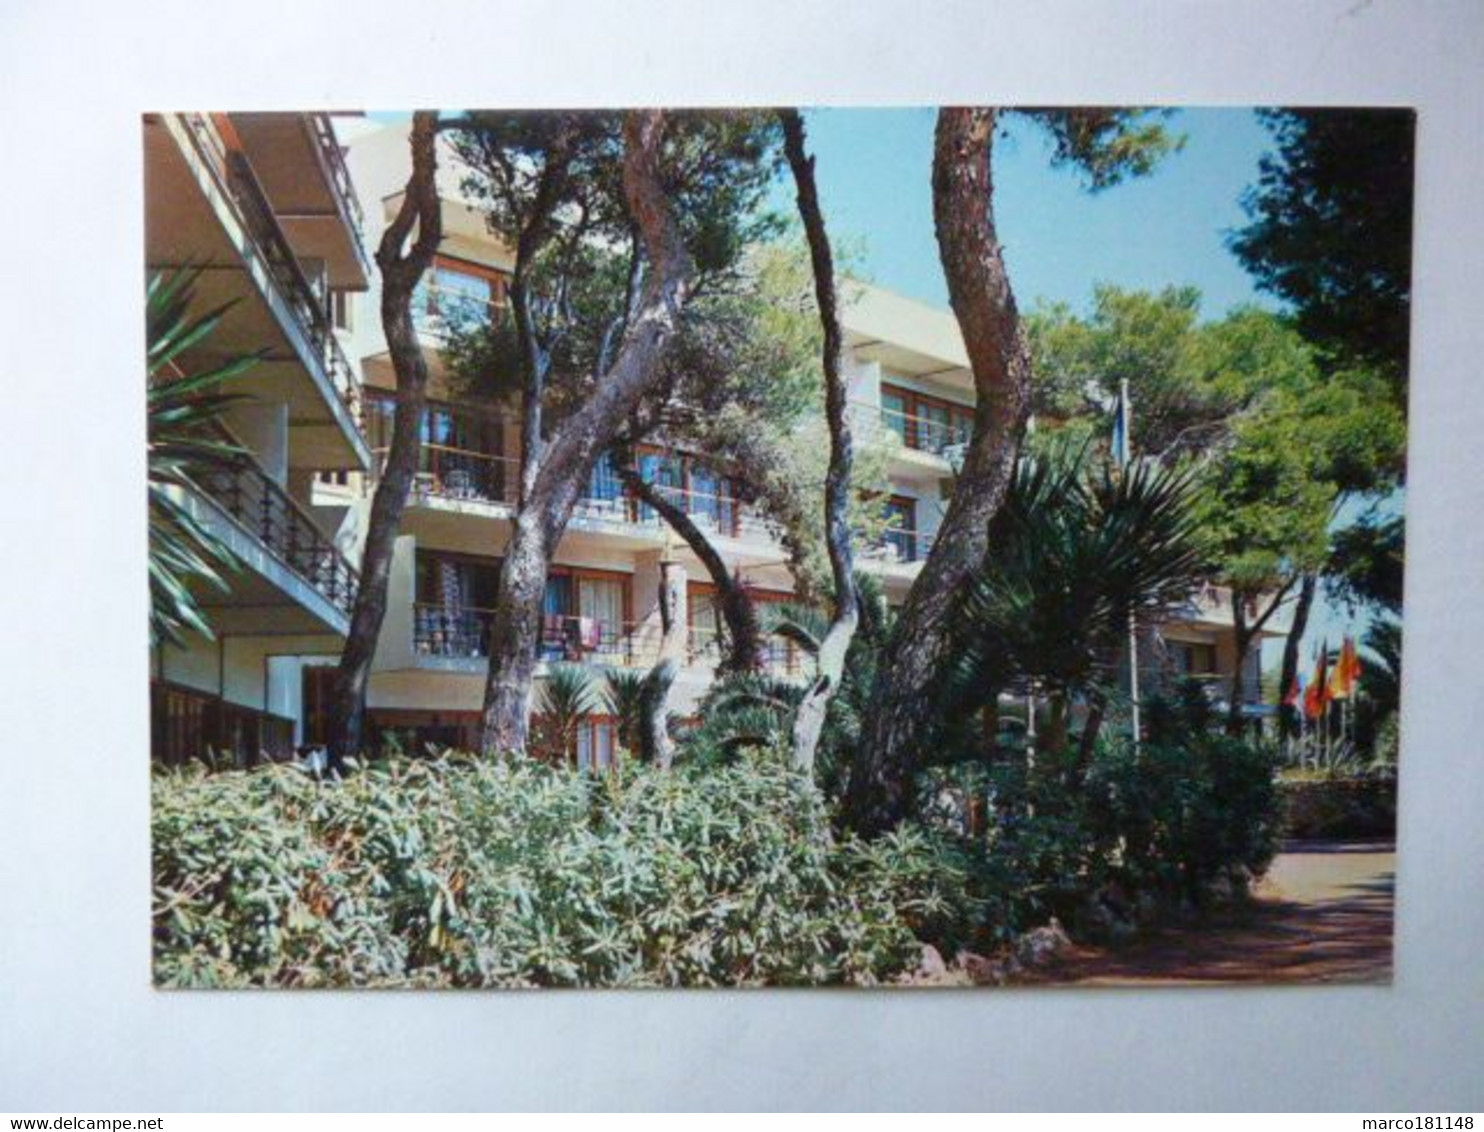 CIUDADELA (Menorca) - HOTEL CALA BLANCA - Menorca